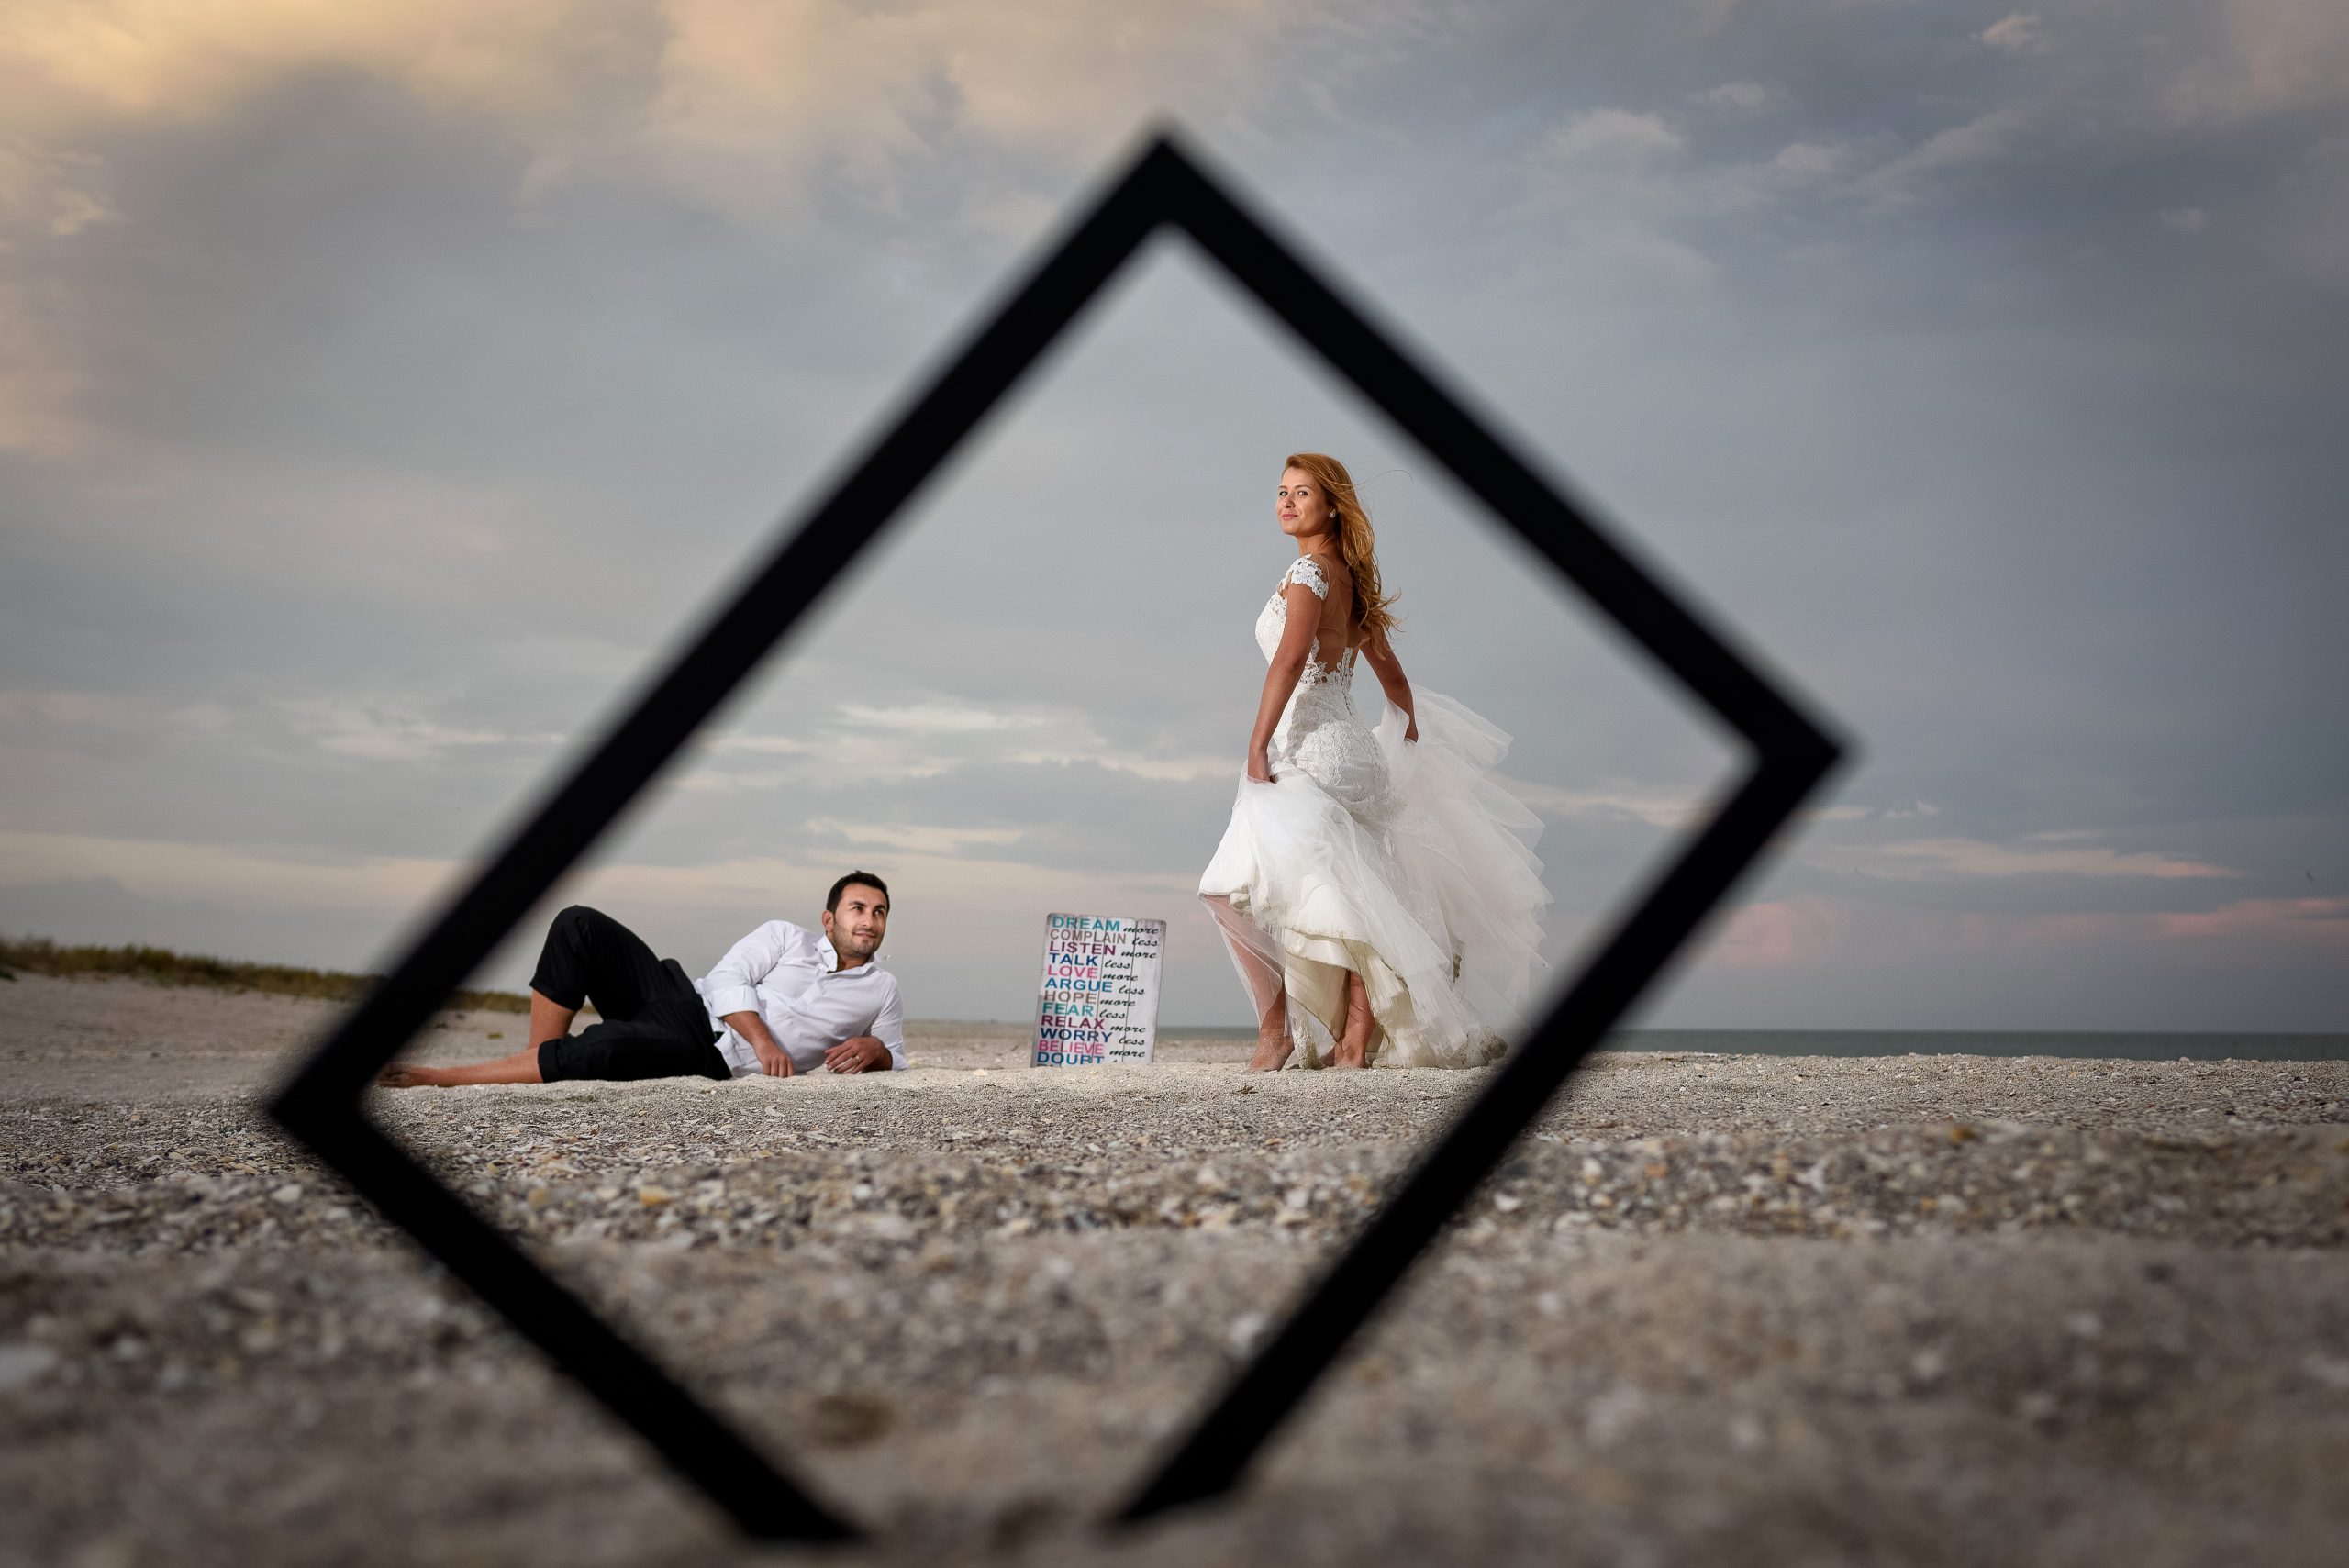 o imagine de nuntă atât de distractivă și unică - trash the dress la mare